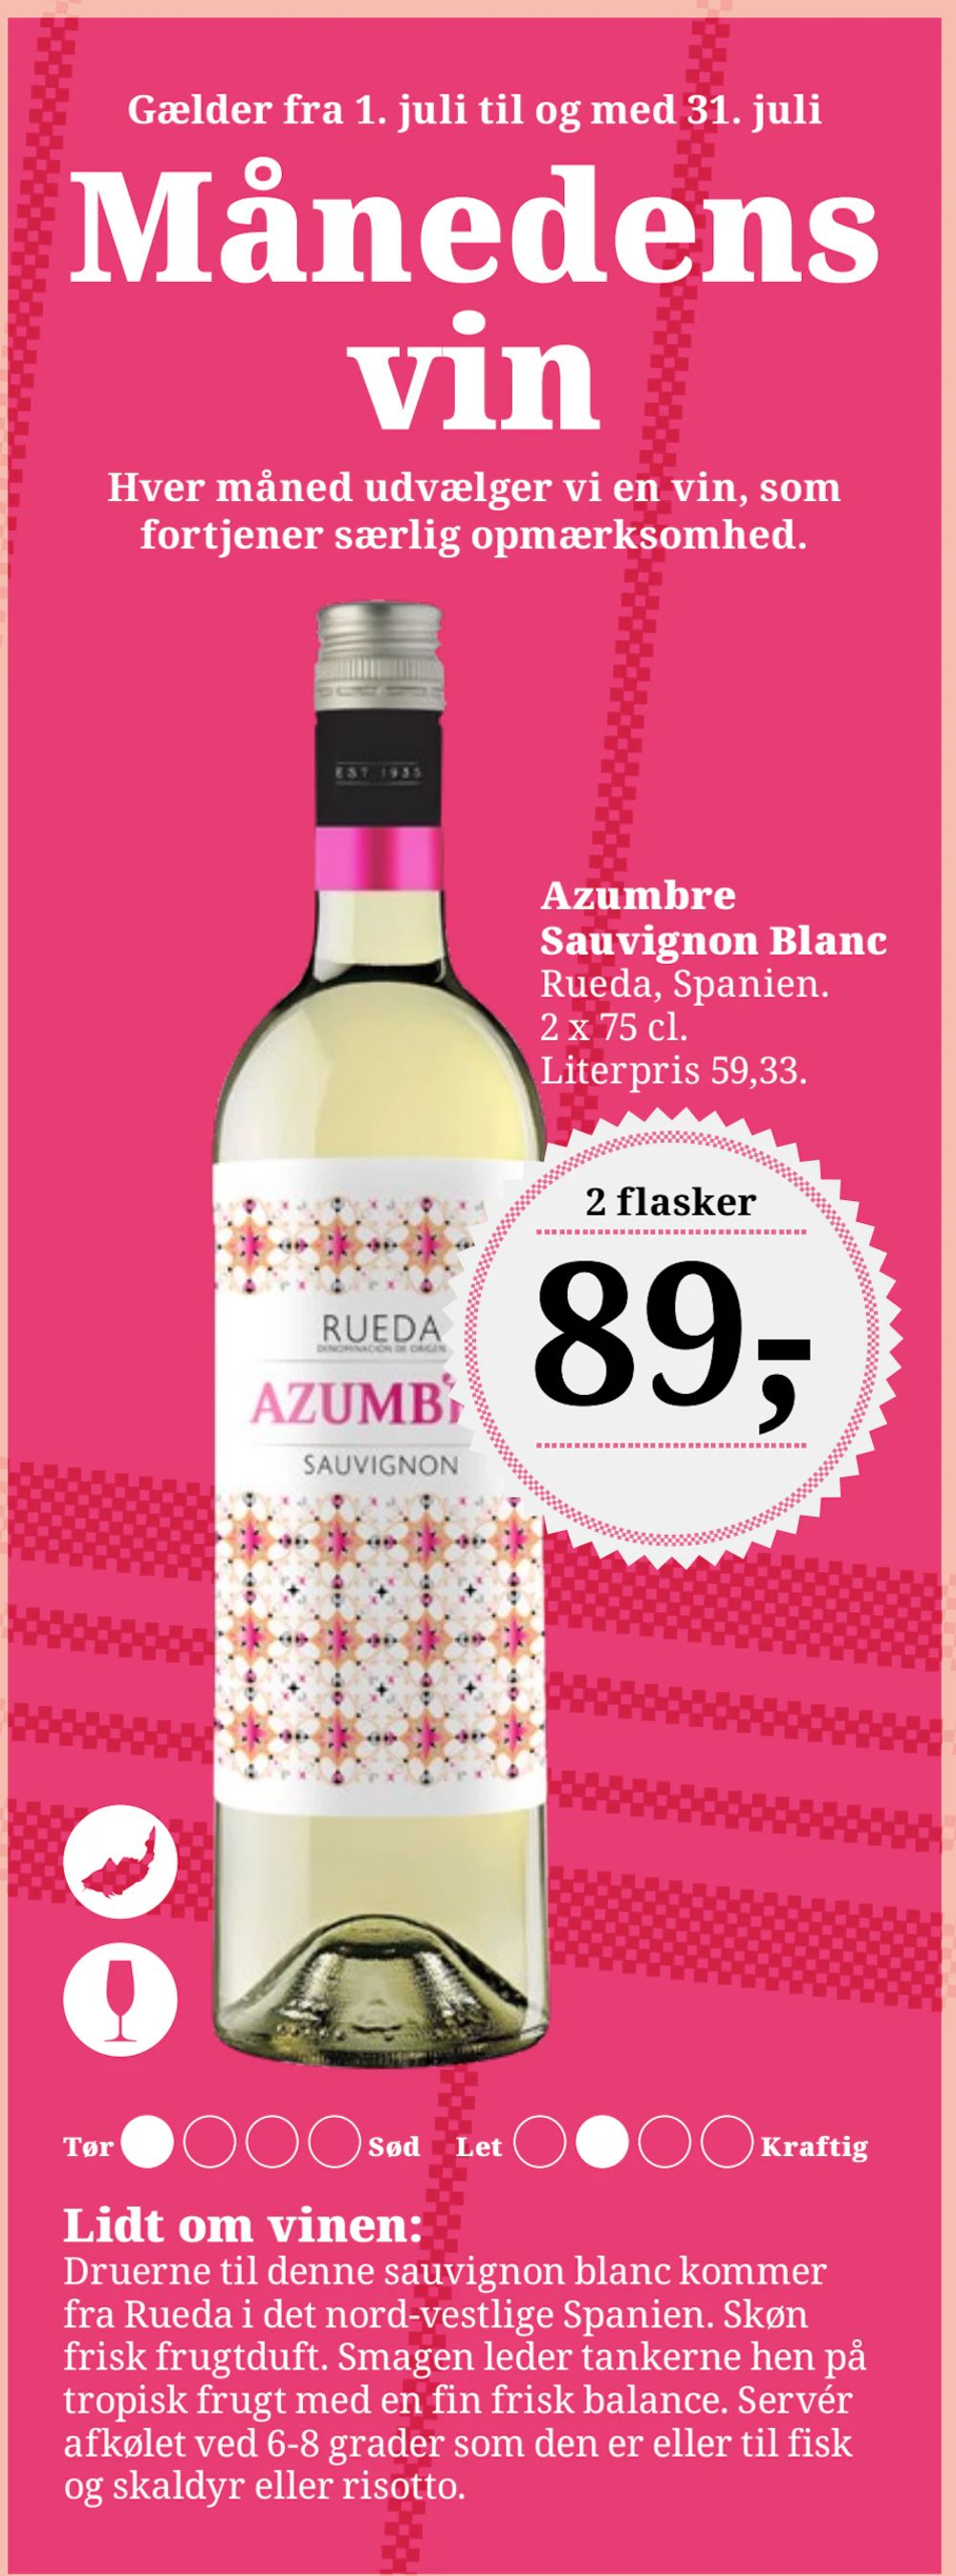 Tilbud på Azumbre Sauvignon Blanc fra Brugsen til 89 kr.